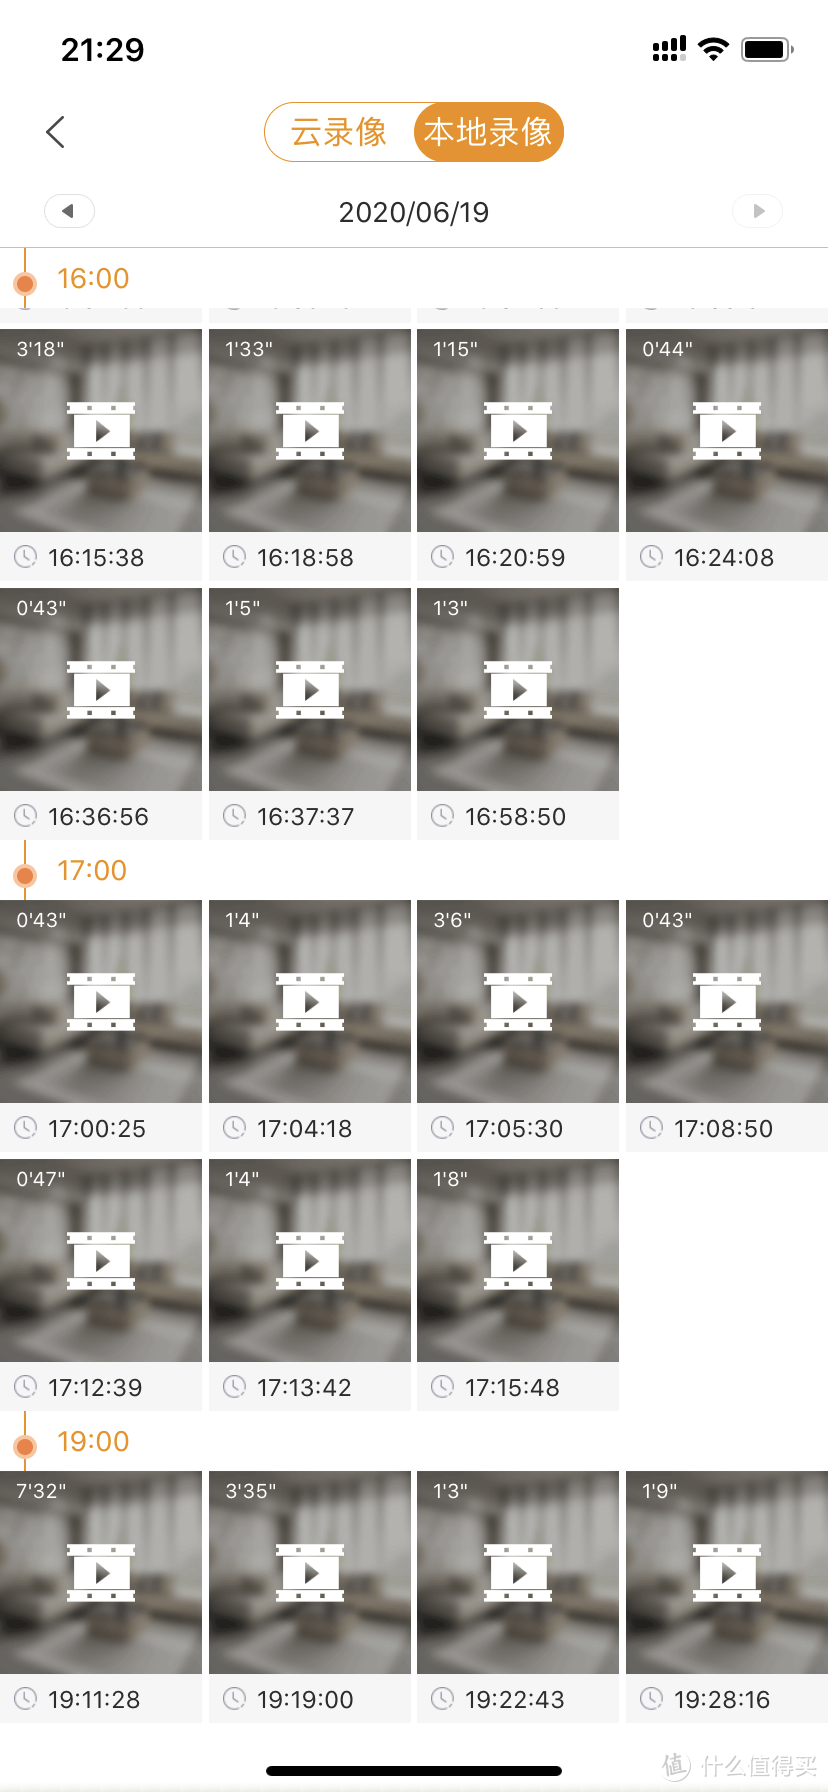 请注意，乐橙App的视频片段时长是不固定的，由画面有没有移动来进行分割，有移动的画面会单独切割出来，用于上传到免费的24小时云储存。